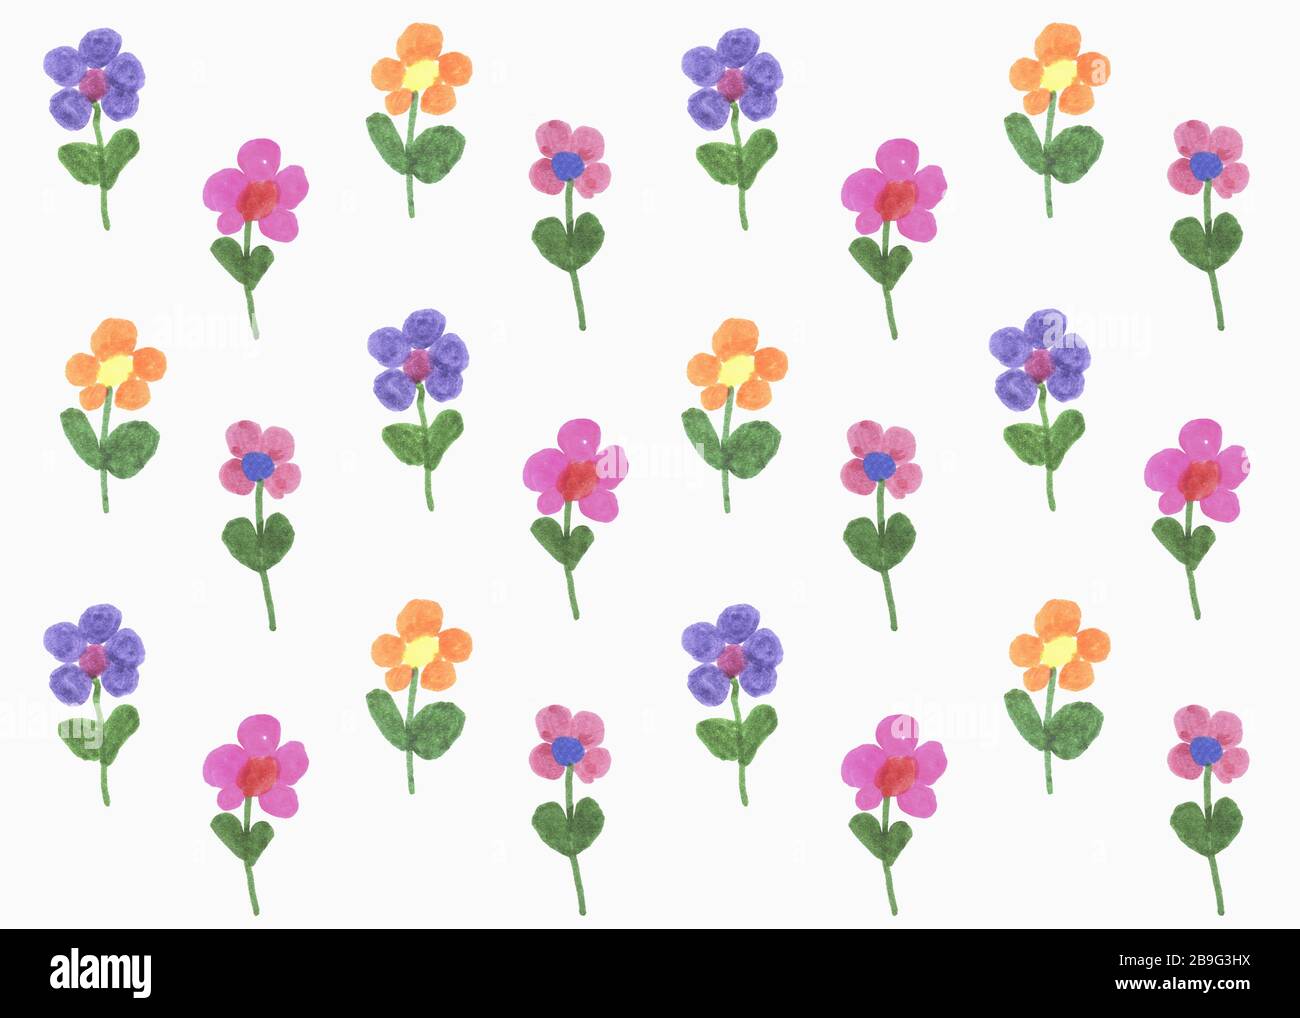 Illustration de fleurs multicolores sur fond blanc Banque D'Images